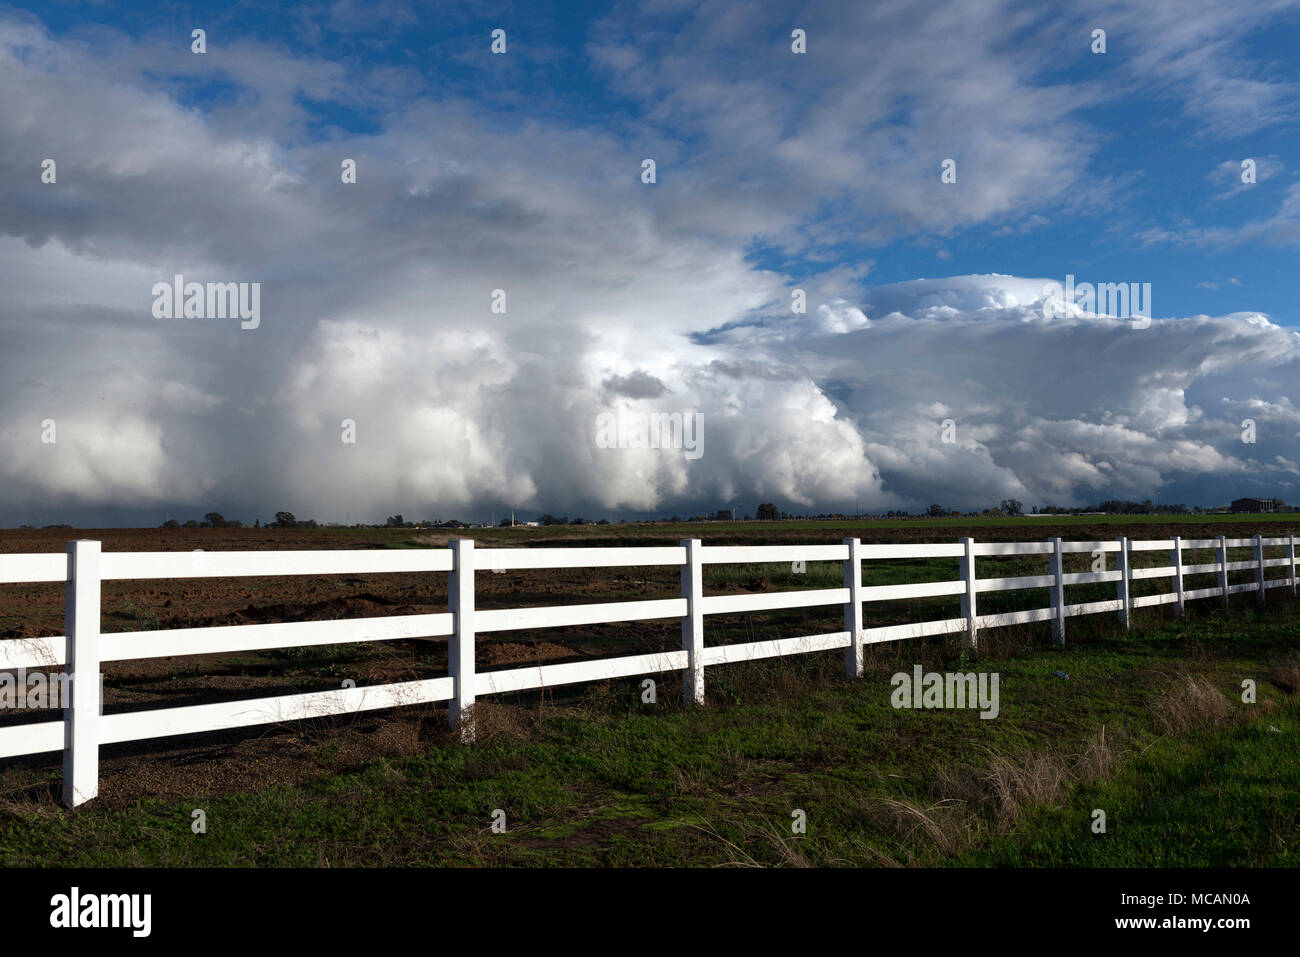 Les nuages se forment complexes après plusieurs pouces de pluie sur plusieurs jours près de Stockton, Californie. Banque D'Images